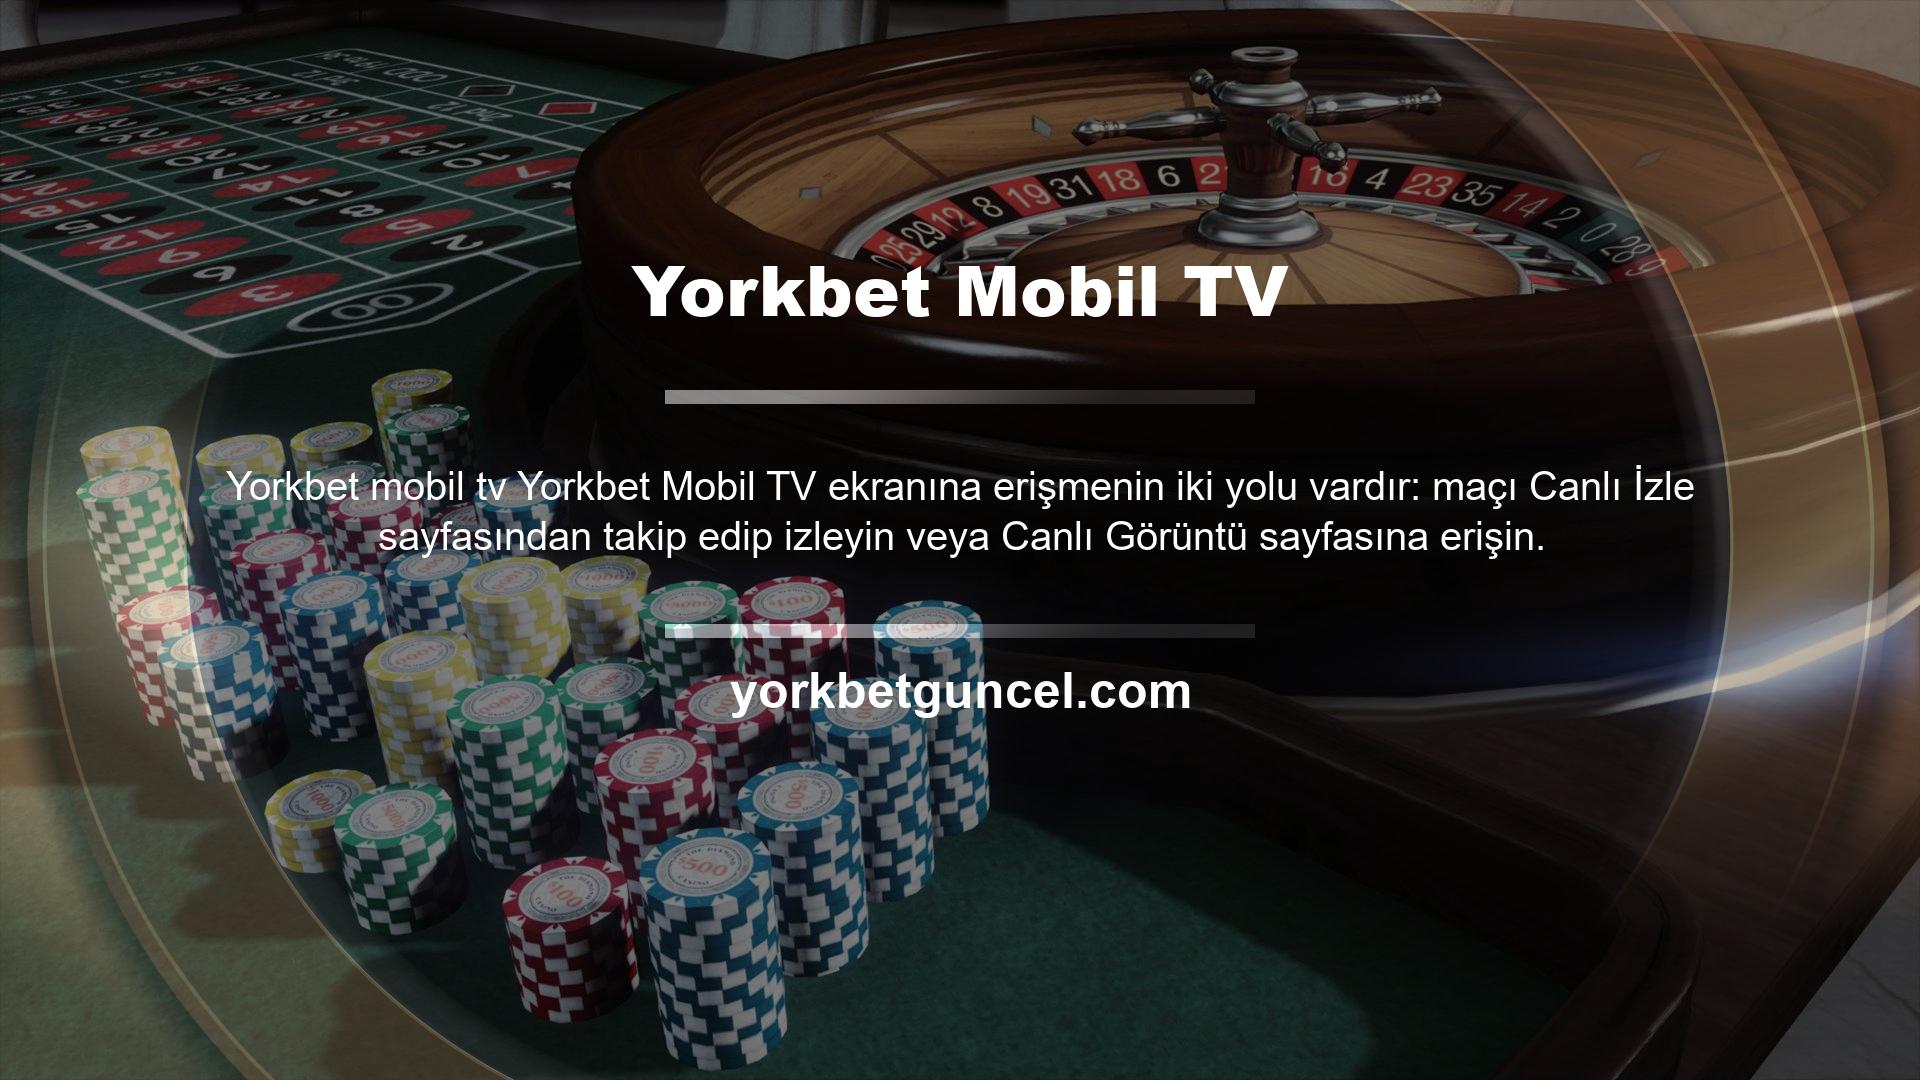 Hareket halindeyken Yorkbet kullanmak için bir şirket web sitesi adresi, mobil uygulama veya benzeri bir şey indirmeye gerek yoktur